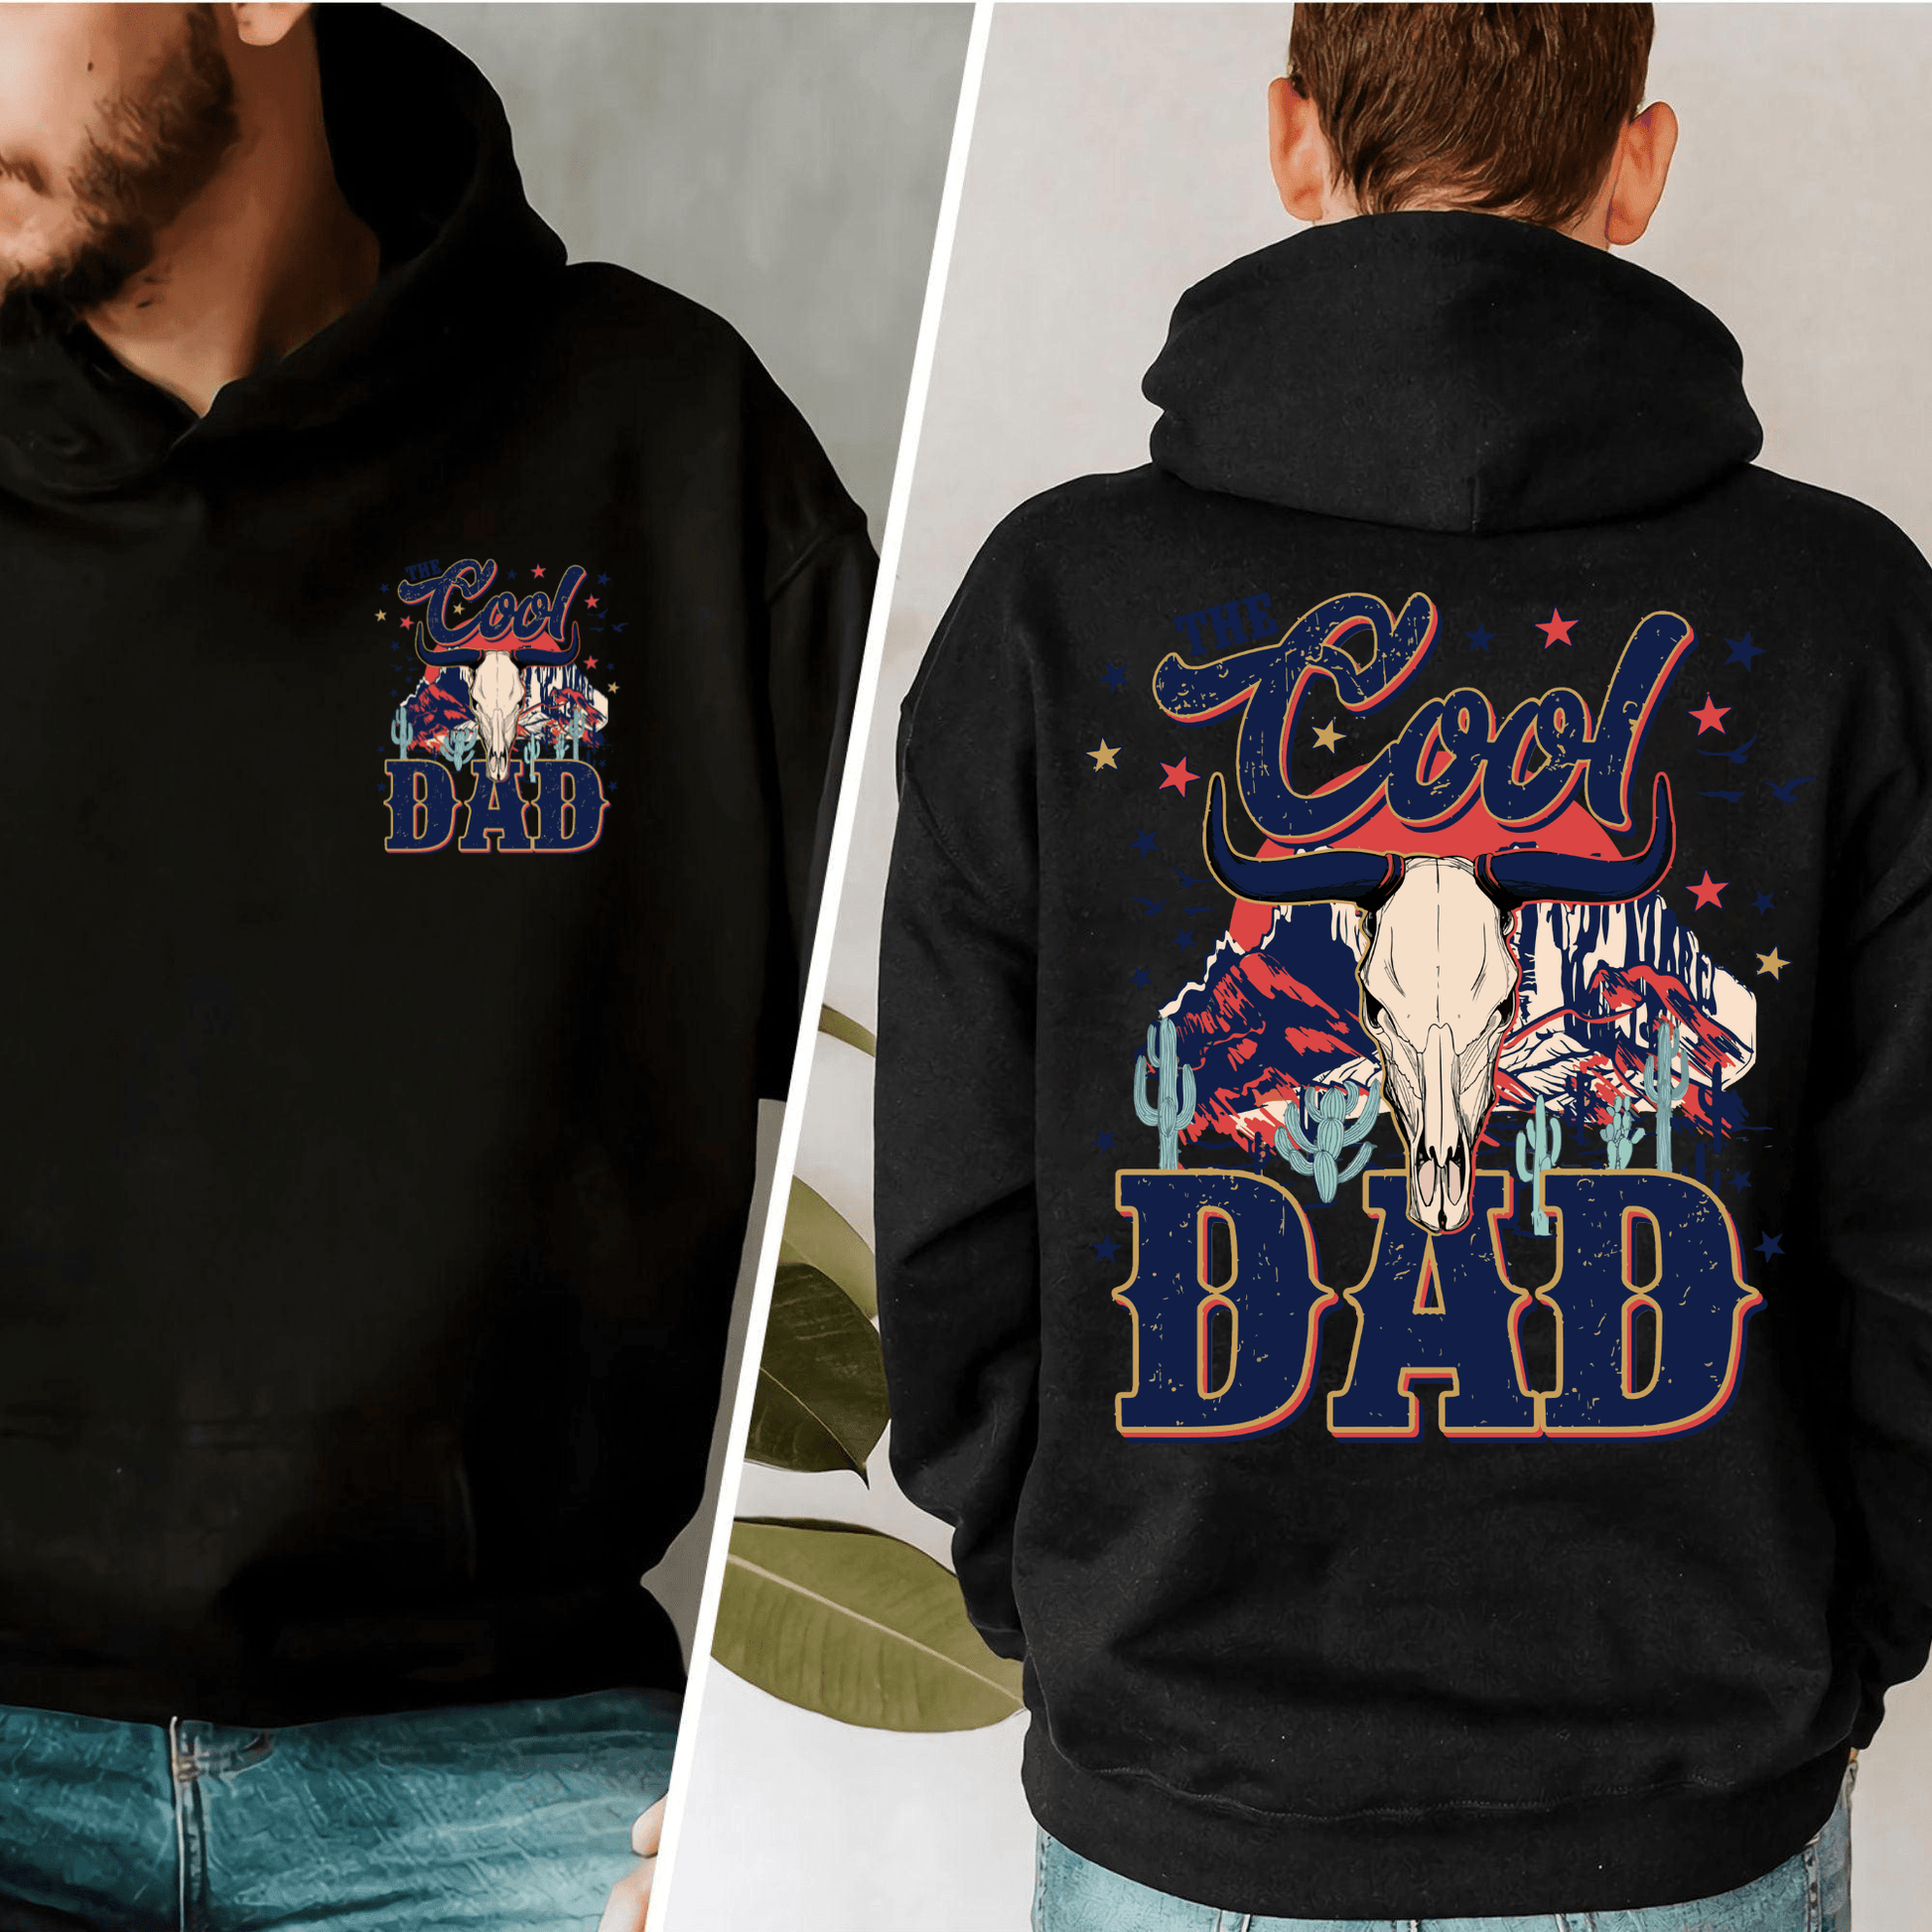 Der Coole Dad - Vintage Sweatshirt für Väter - GiftHaus